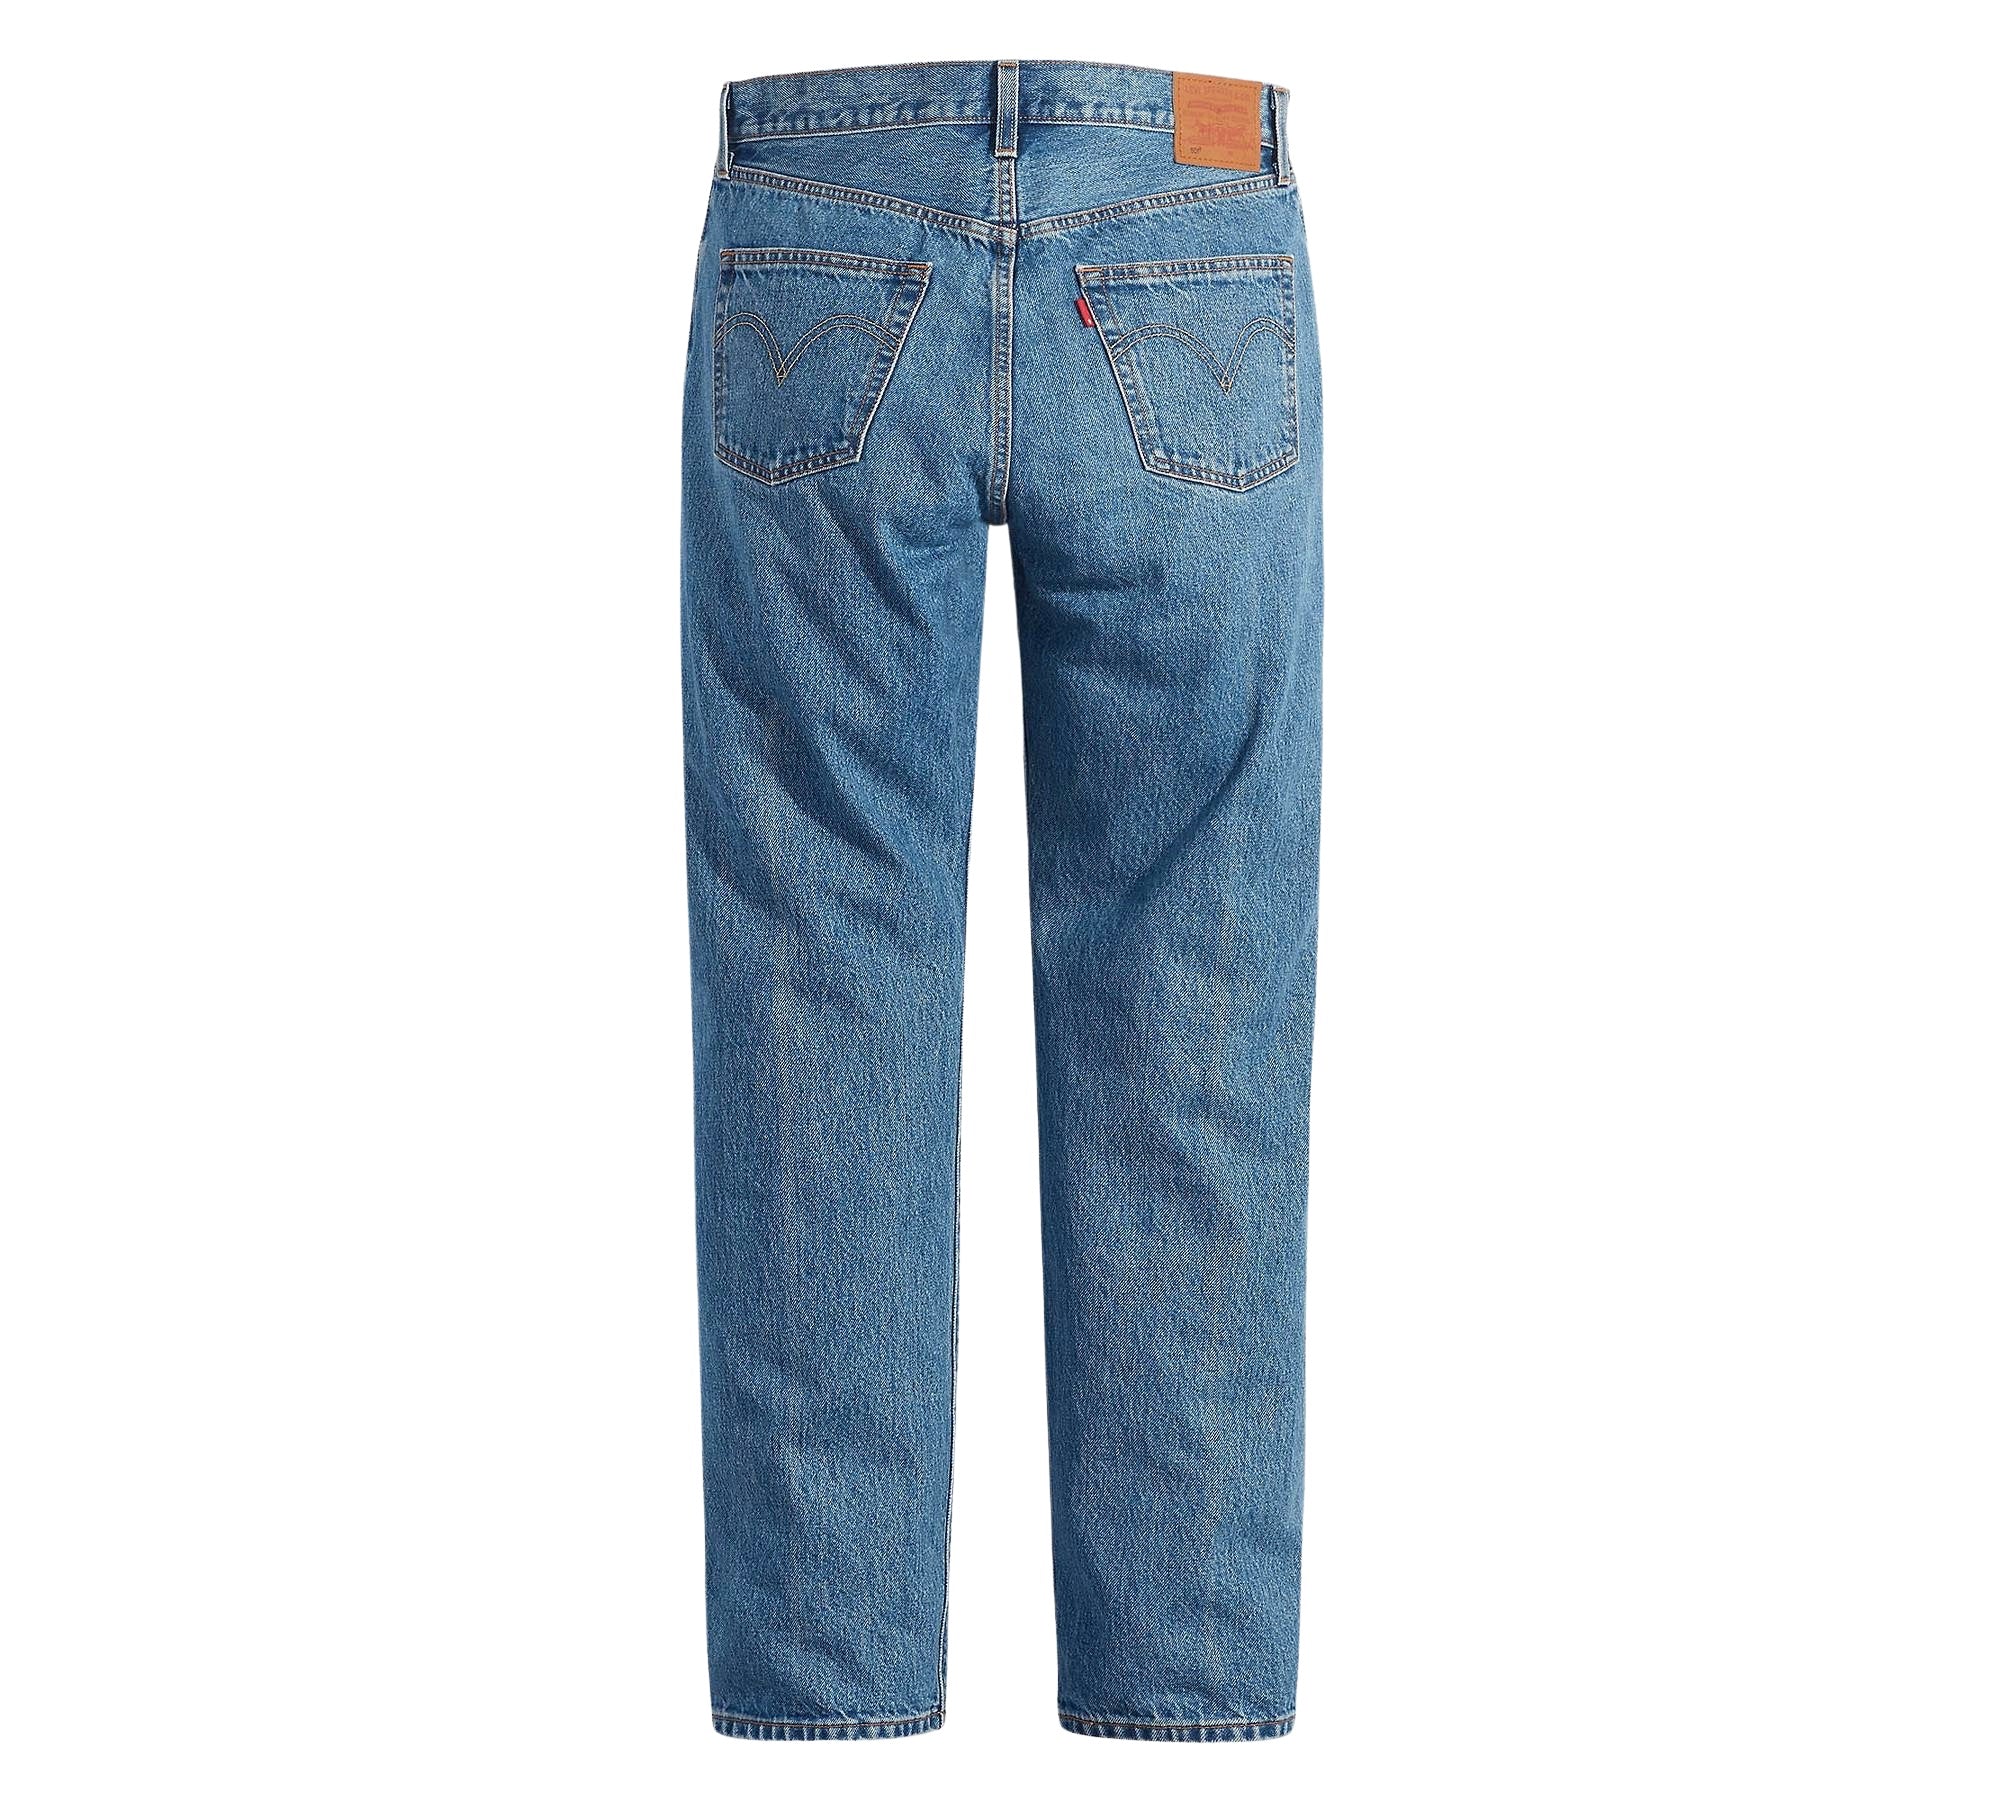 Vintage Levi's Classic Blue Jeans - Waist 31 - Length 32 - Vintage Superstore Online